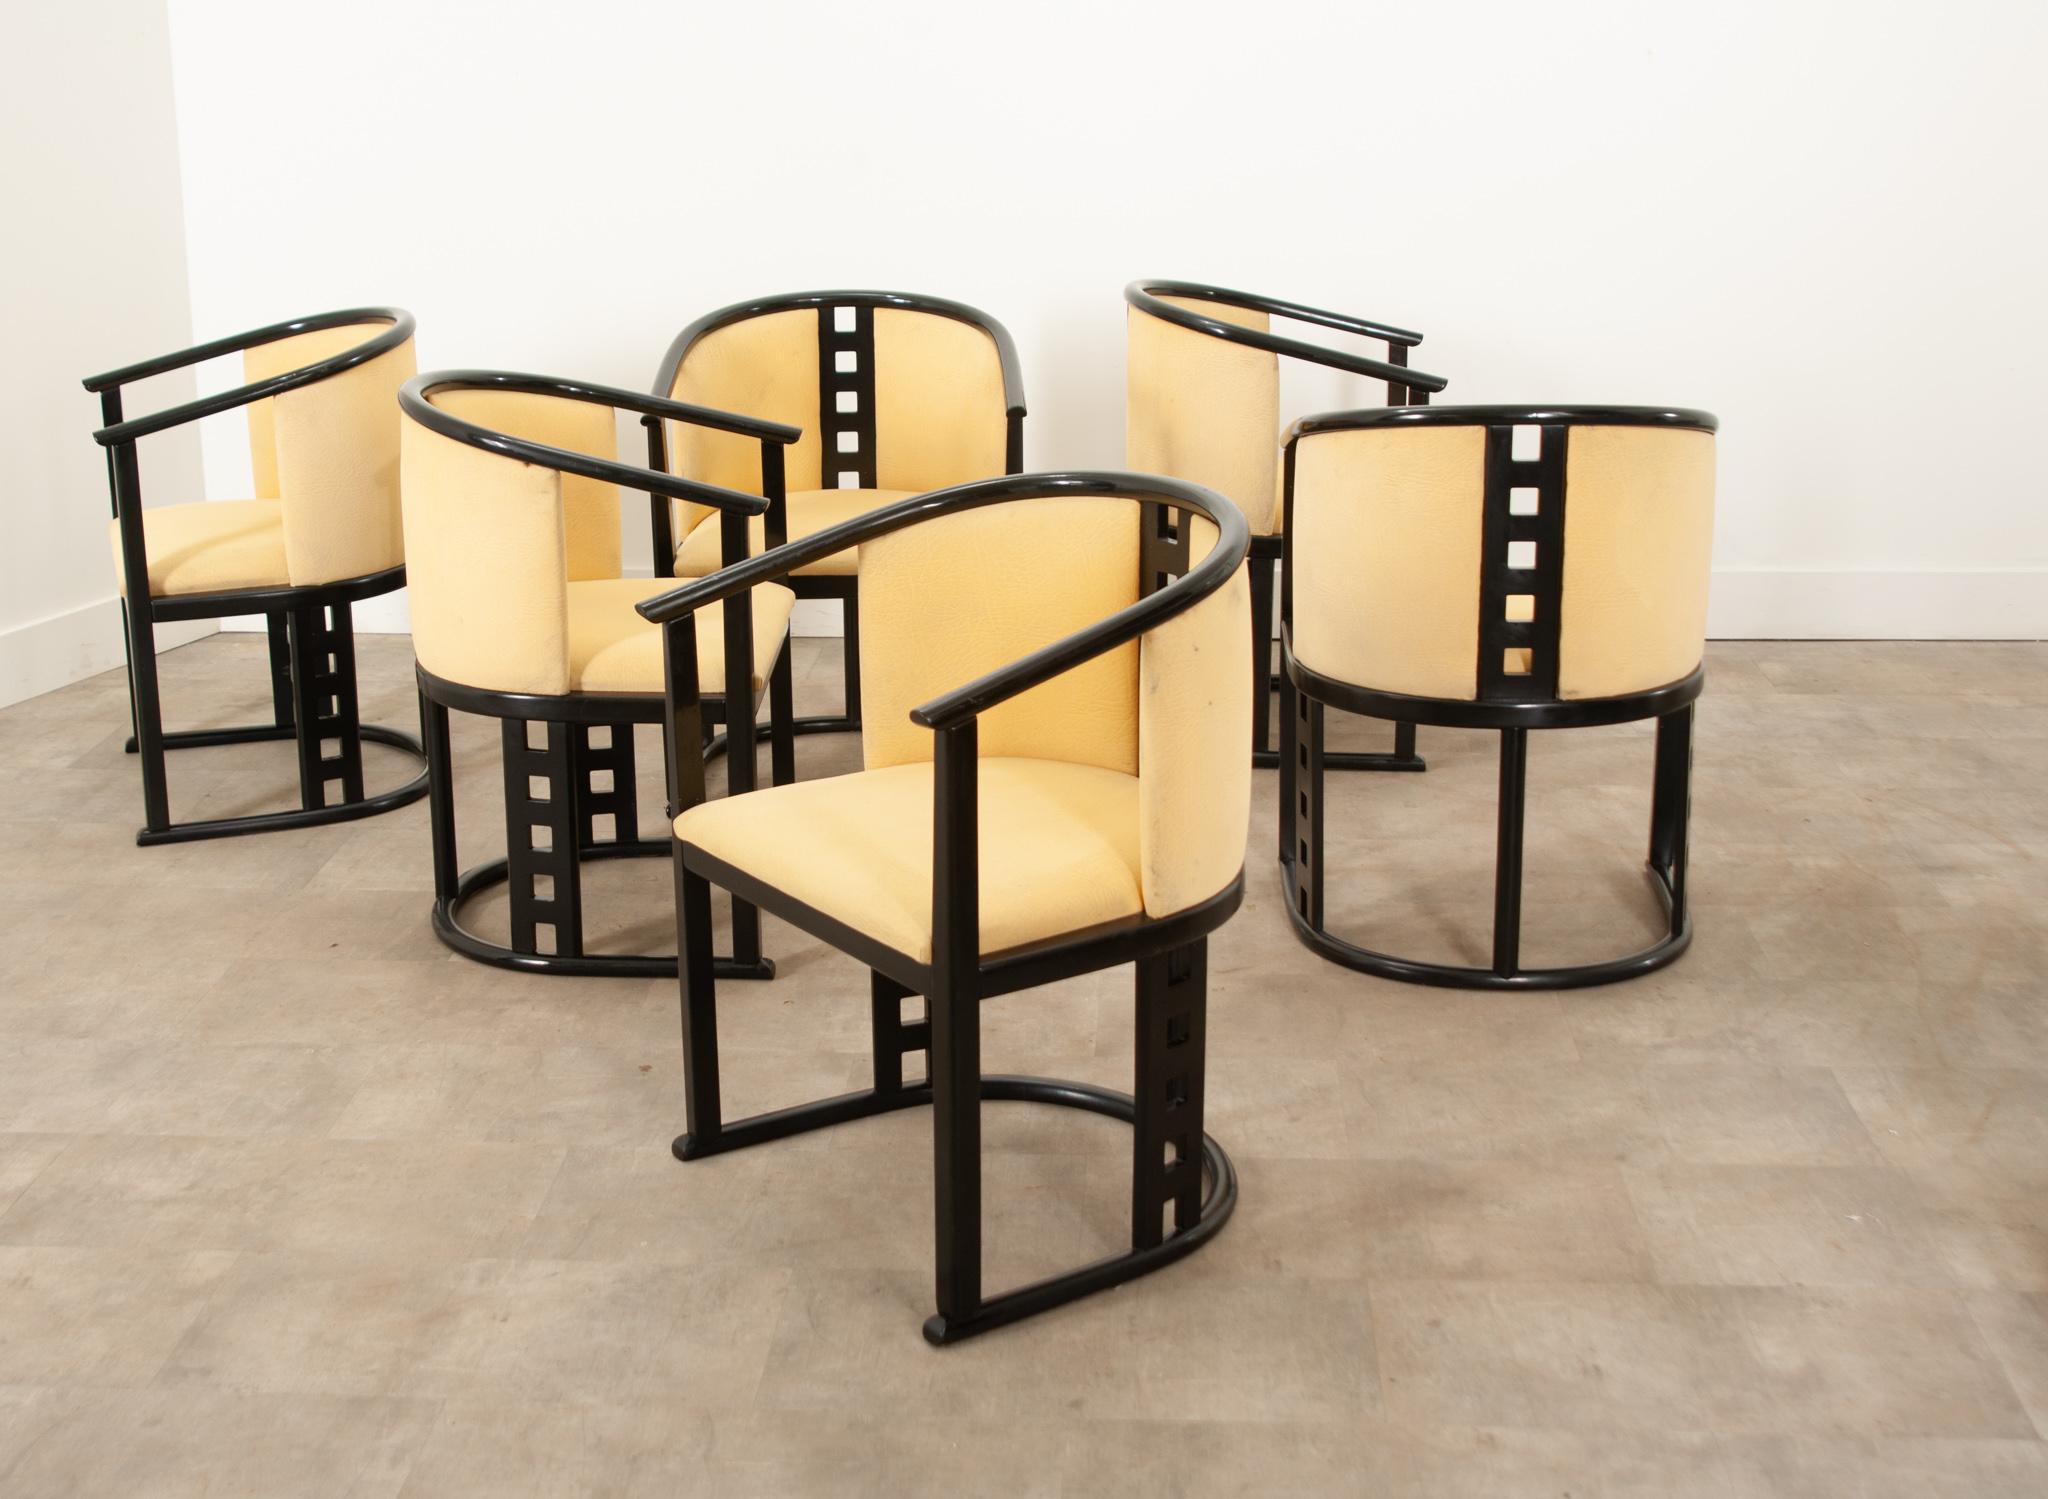 Un ensemble fantastique de chaises de style Sécession viennoise de Josef Hoffmann. Ces chaises sont construites en bois courbé et présentent des lignes simples et épurées ainsi que de nombreux espaces négatifs. Les dossiers en échelle percés, les